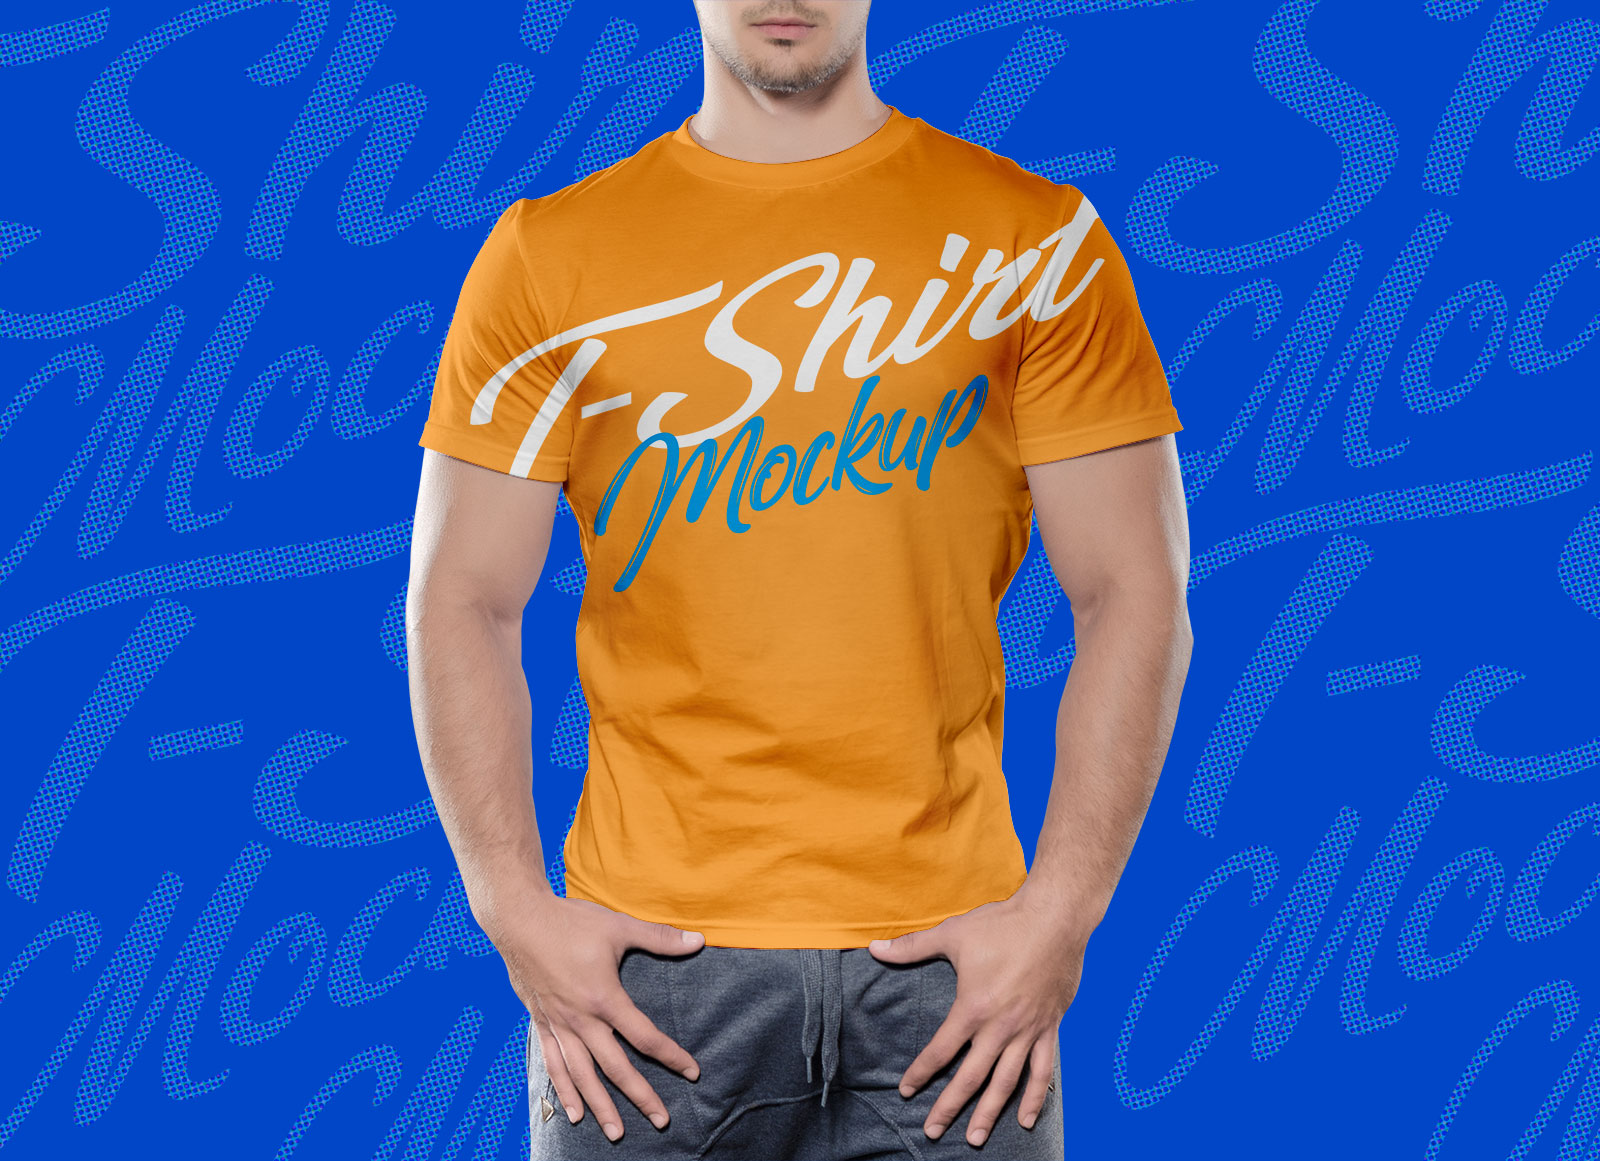 Free-Half-Sleeves-T-shirt-Mockup-PSD